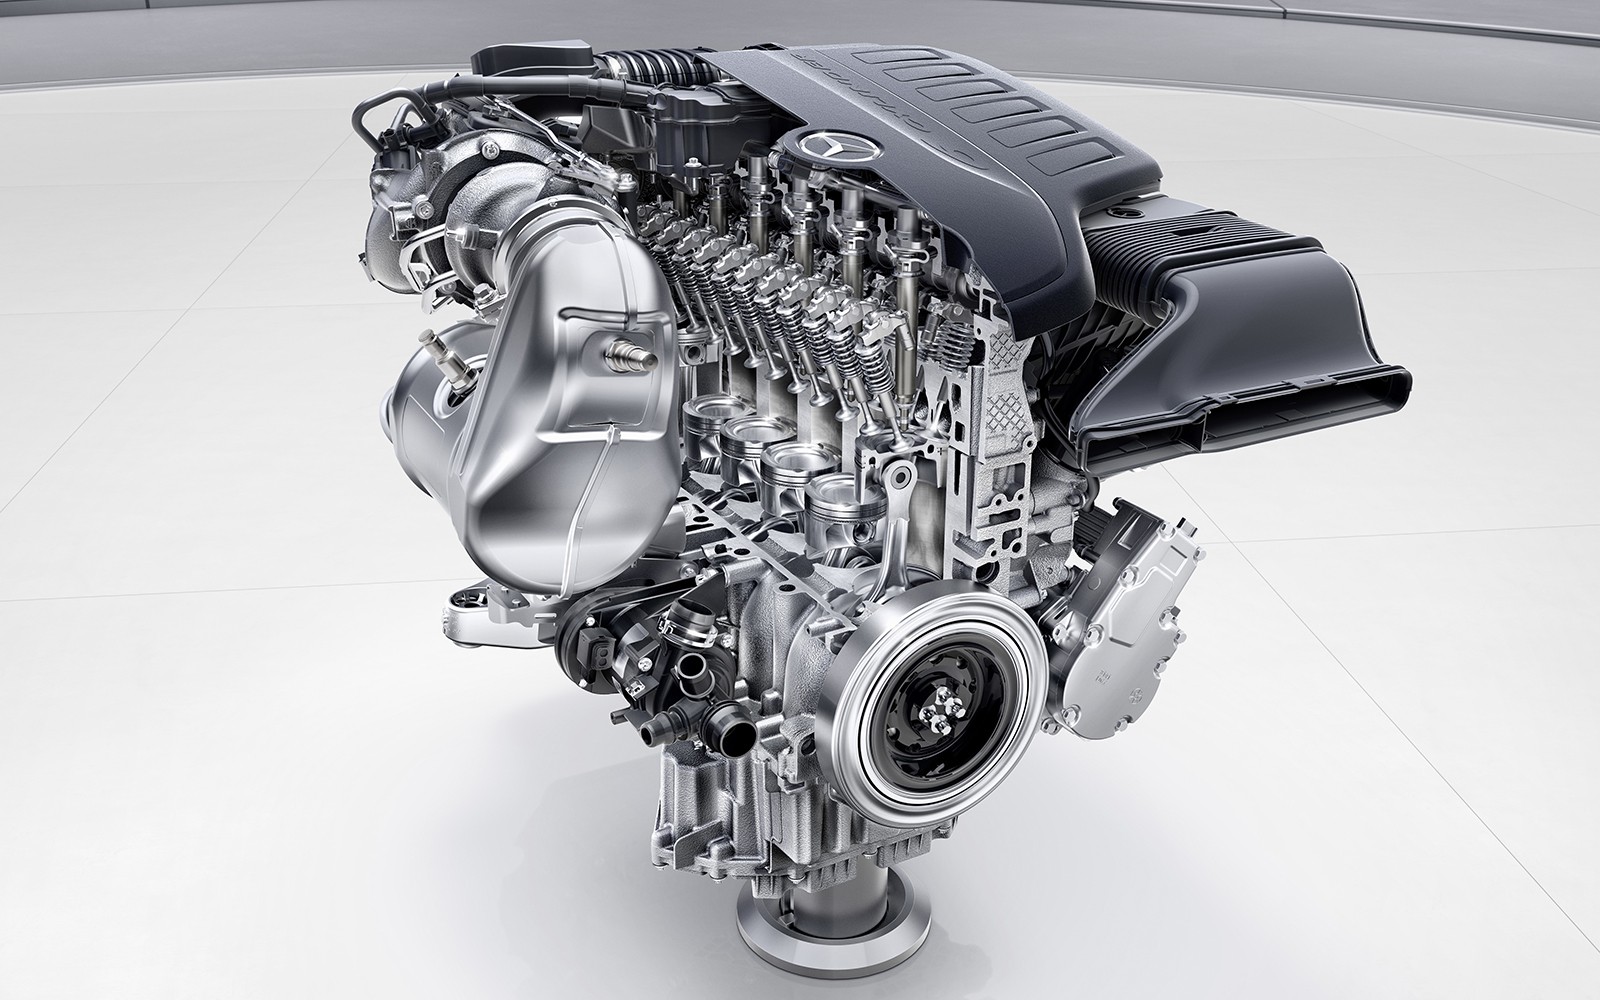 Umfassende Motorenoffensive bei Mercedes-Benz: Stärker, sparsamer und sauberer